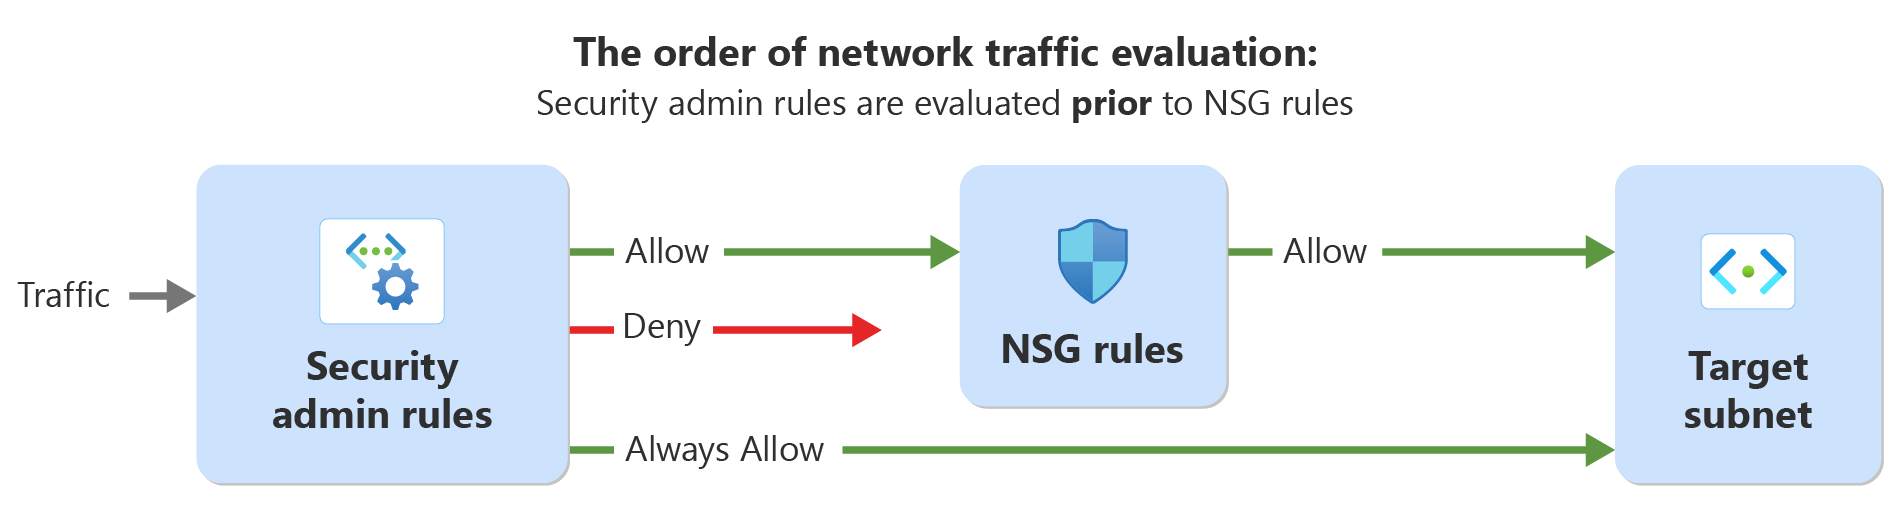 Diagrama que mostra a ordem de avaliação do tráfego de rede com regras de administrador de segurança e regras de segurança de rede.